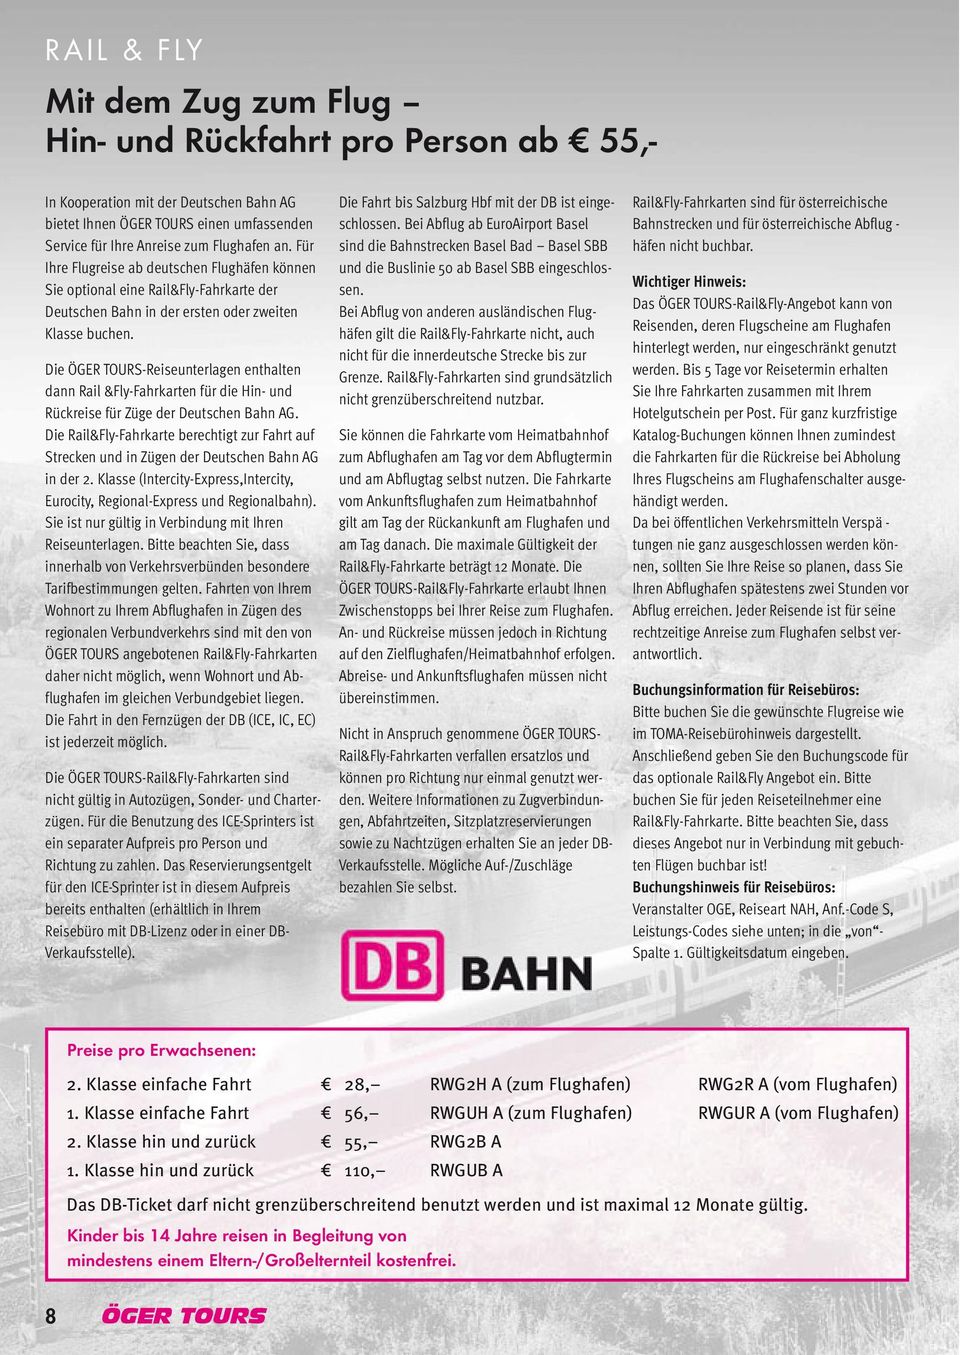 Die ÖGER TOURS-Reiseunterlagen enthalten dann Rail &Fly-Fahrkarten für die Hin- und Rückreise für Züge der Deutschen Bahn AG.